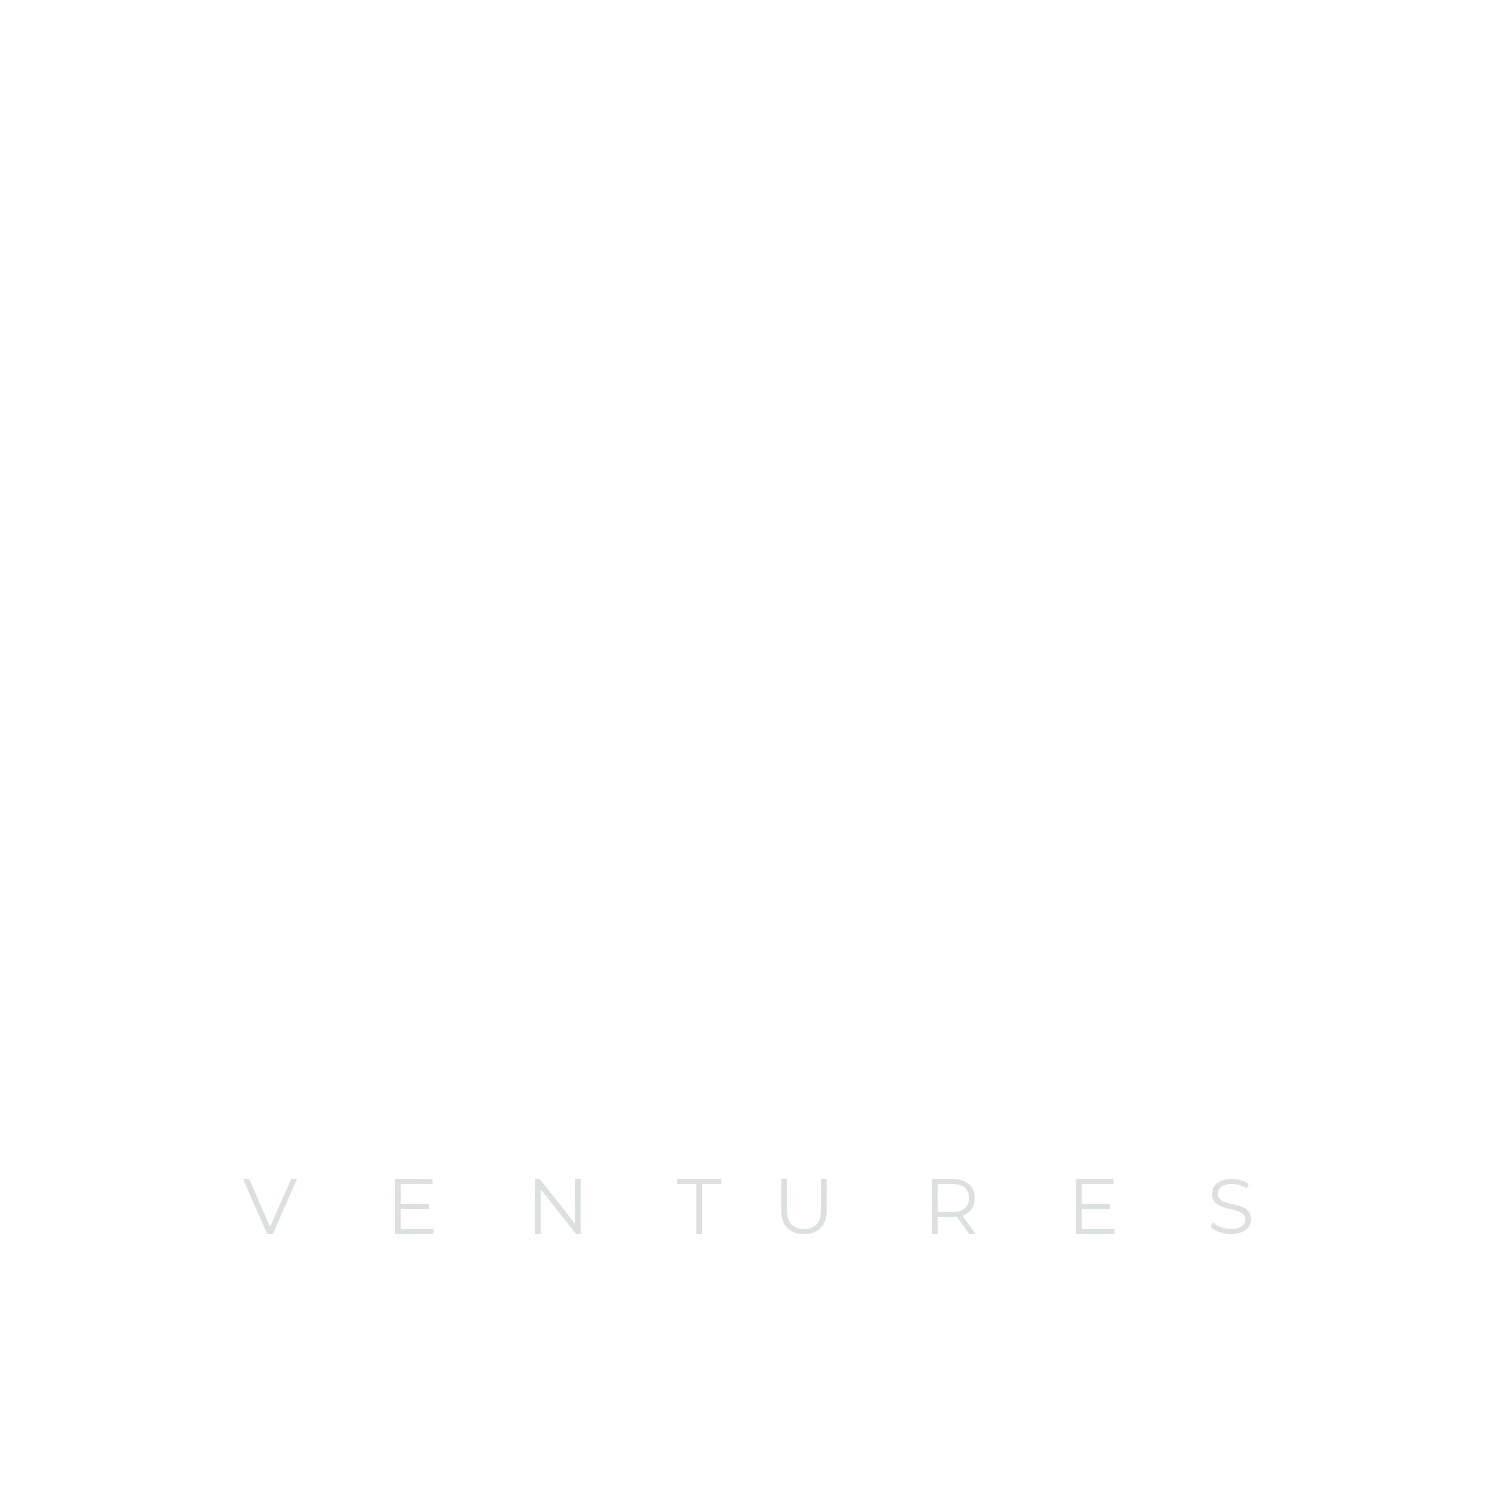 GoodPaper Ventures